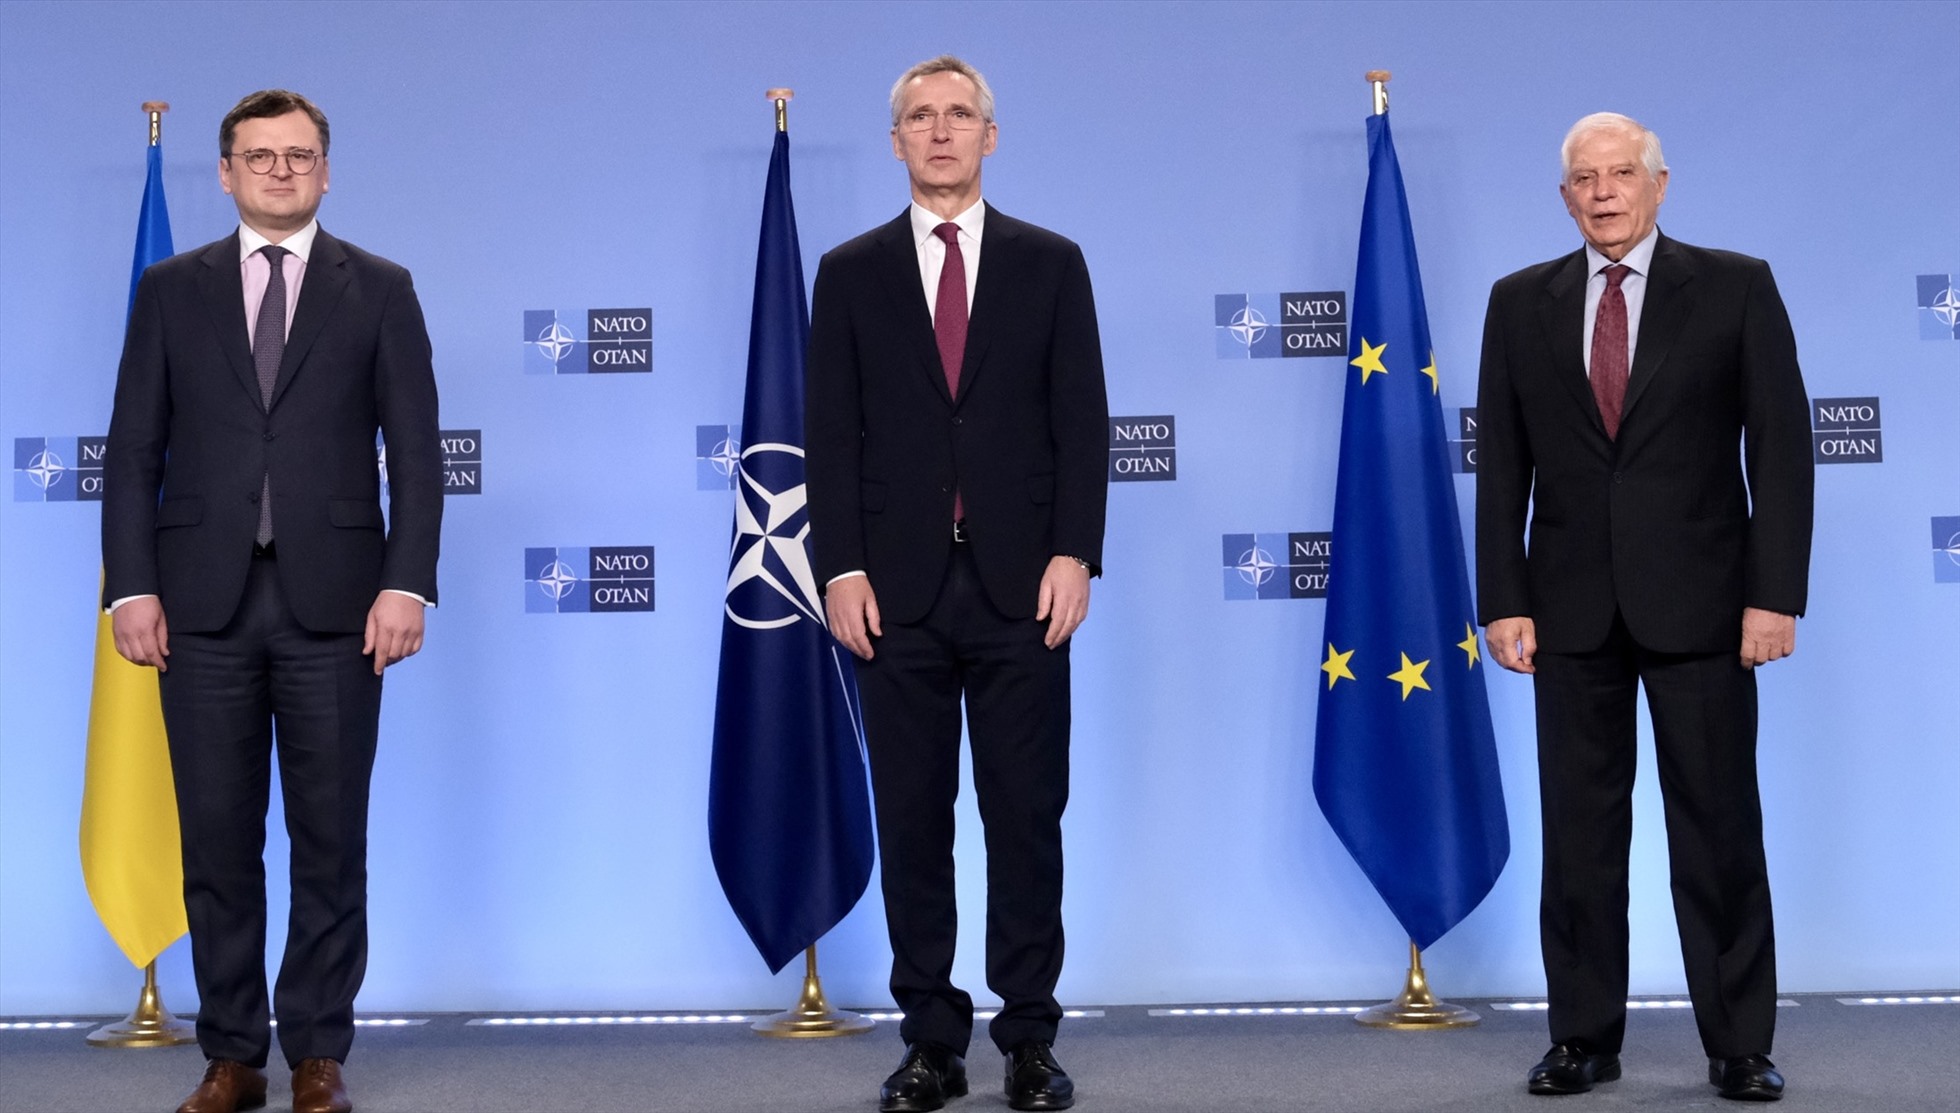 Tổng thư ký NATO Jens Stoltenberg (giữa) gặp Ngoại trưởng Ukraina Dmitri Kuleba (trái) và Cao ủy EU về chính sách an ninh và đối ngoại Josep Borrell (phải) tại trụ sở NATO ở Brussels, Bỉ, ngày 21.2.2023. Ảnh: NATO